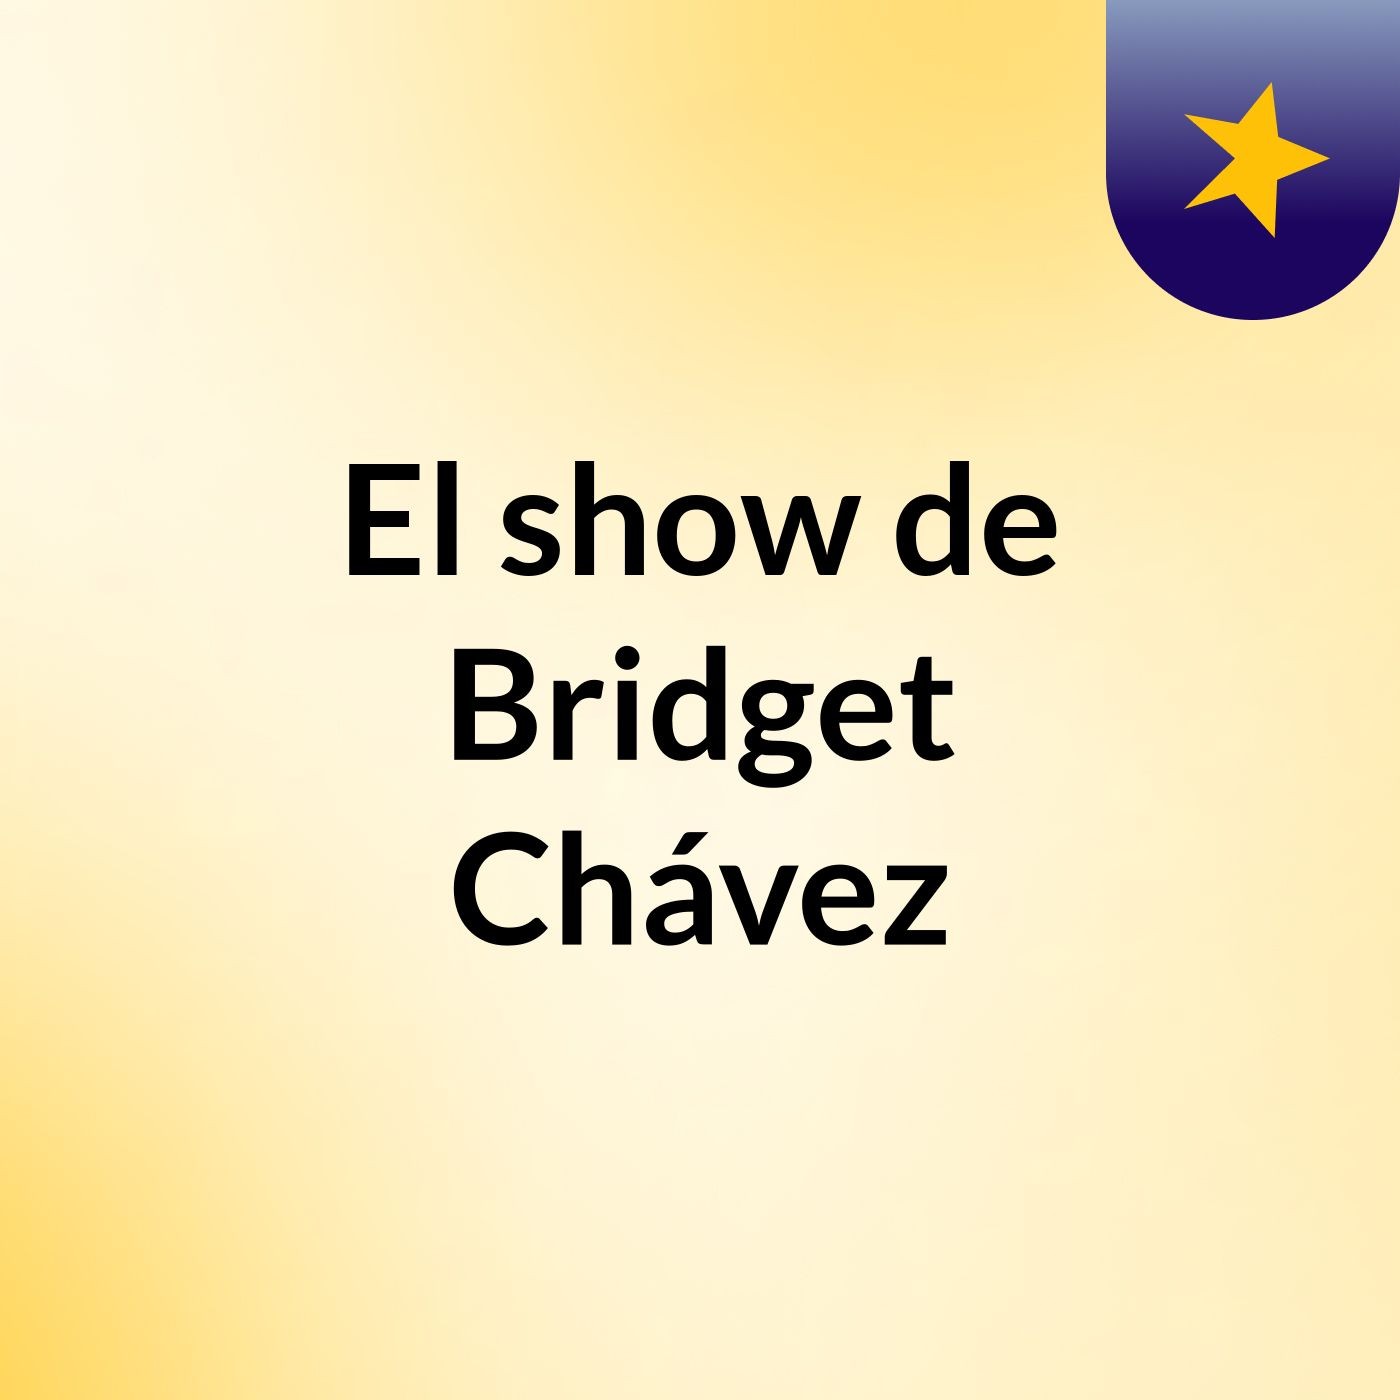 El show de Bridget Chávez